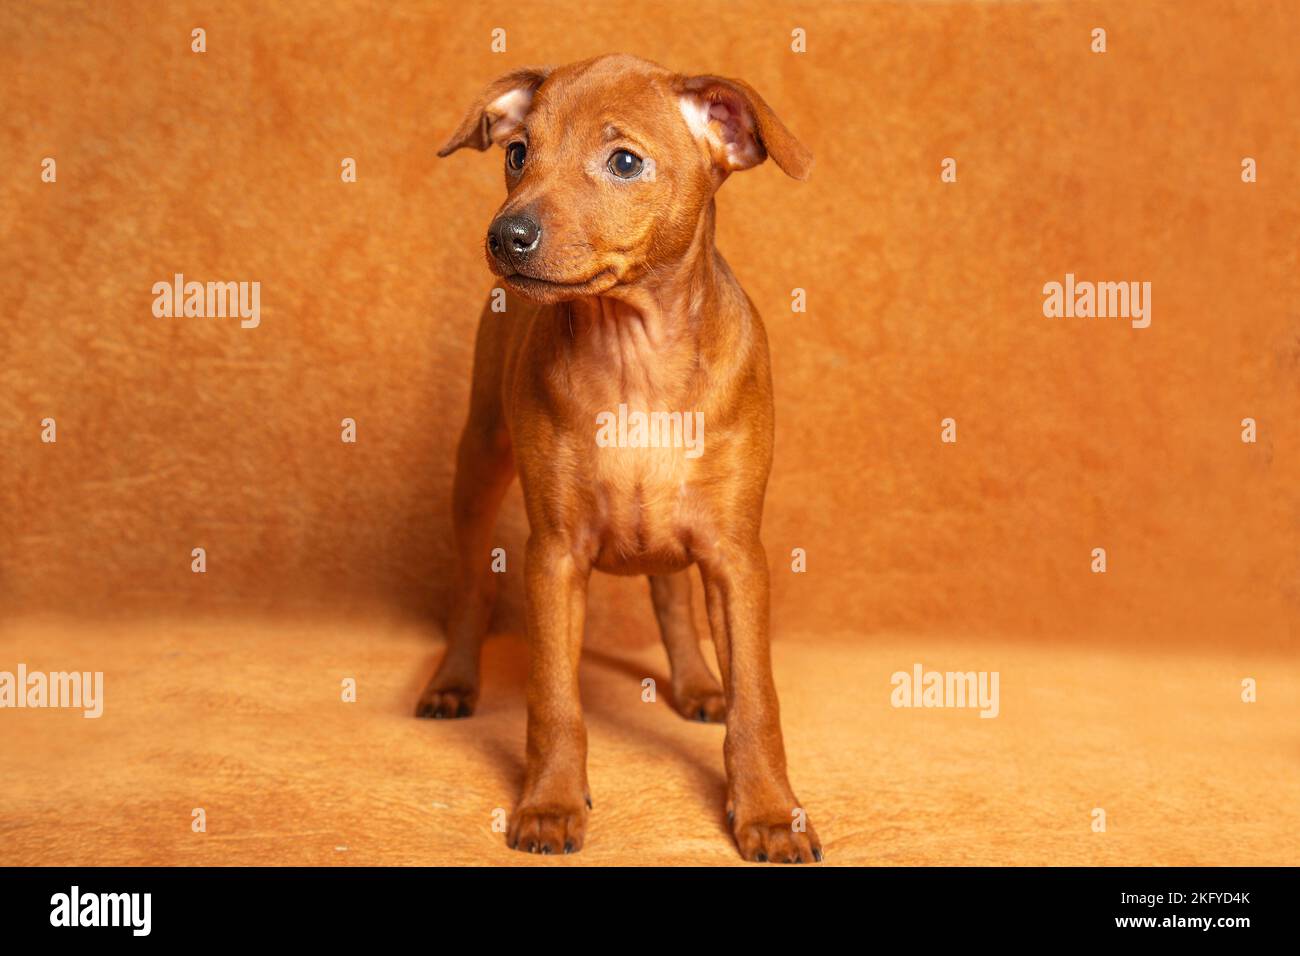 Ein kleiner Welpe steht auf braunem Hintergrund. Glatter, brauner, reinrassiger Welpe. Nahaufnahme. Der kleine Hund schaut weg. Stockfoto